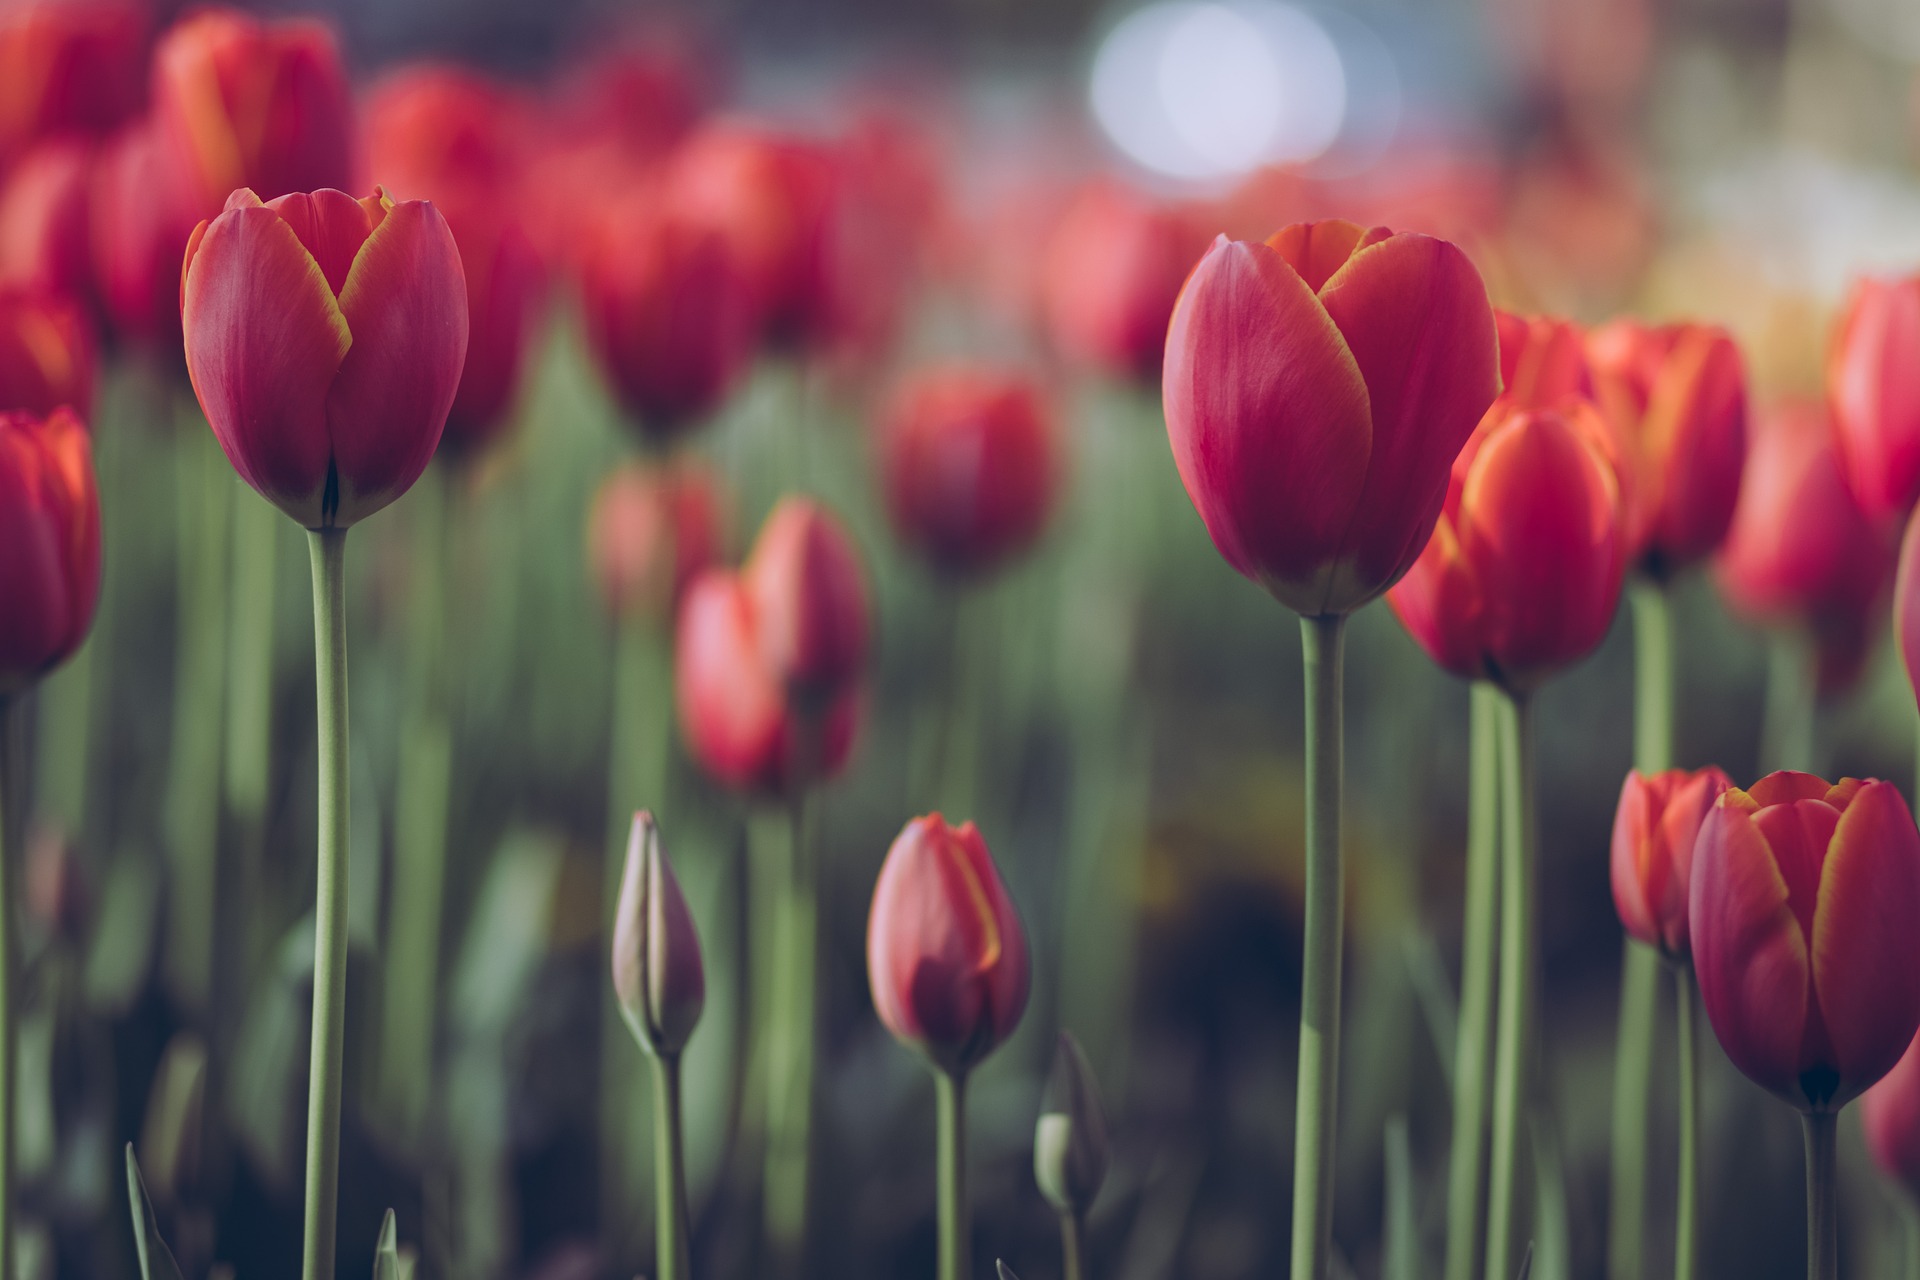 Wiosenne tulipany – jak wybrać odpowiednie cebulki w 3 krokach? Podpowiadamy!